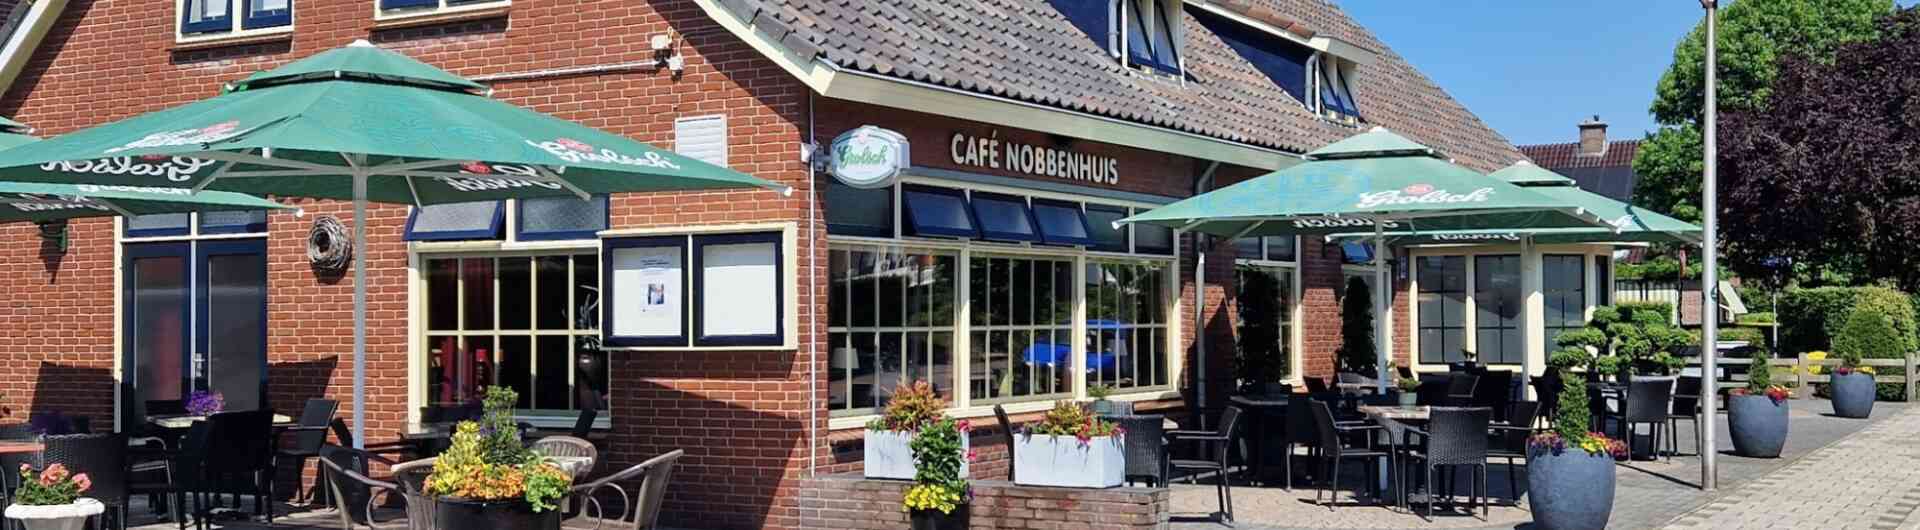 Cafe nobbenhuis